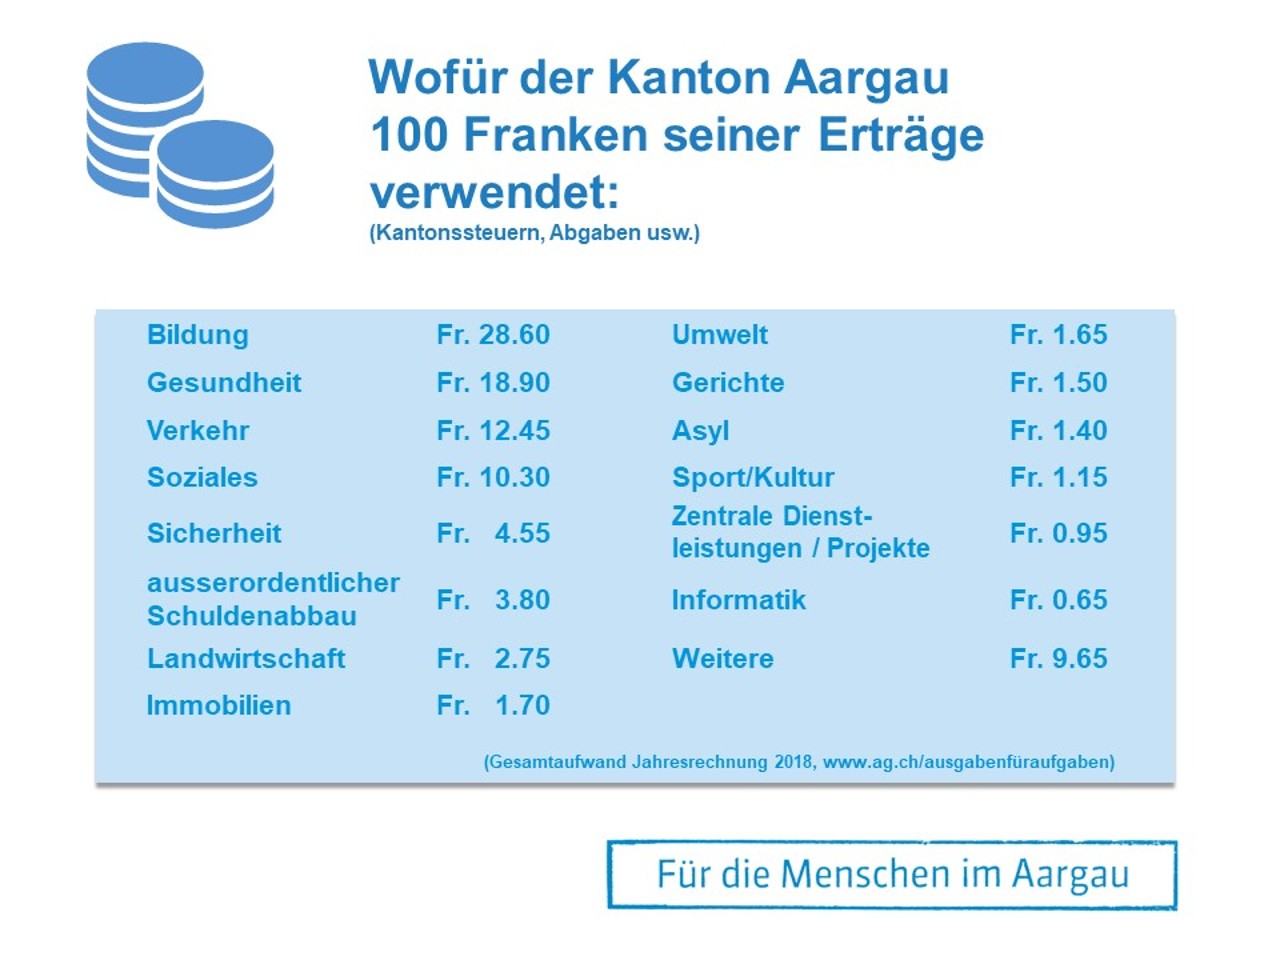 Wofür der Kanton Aargau 100 Franken seiner Erträge ausgibt